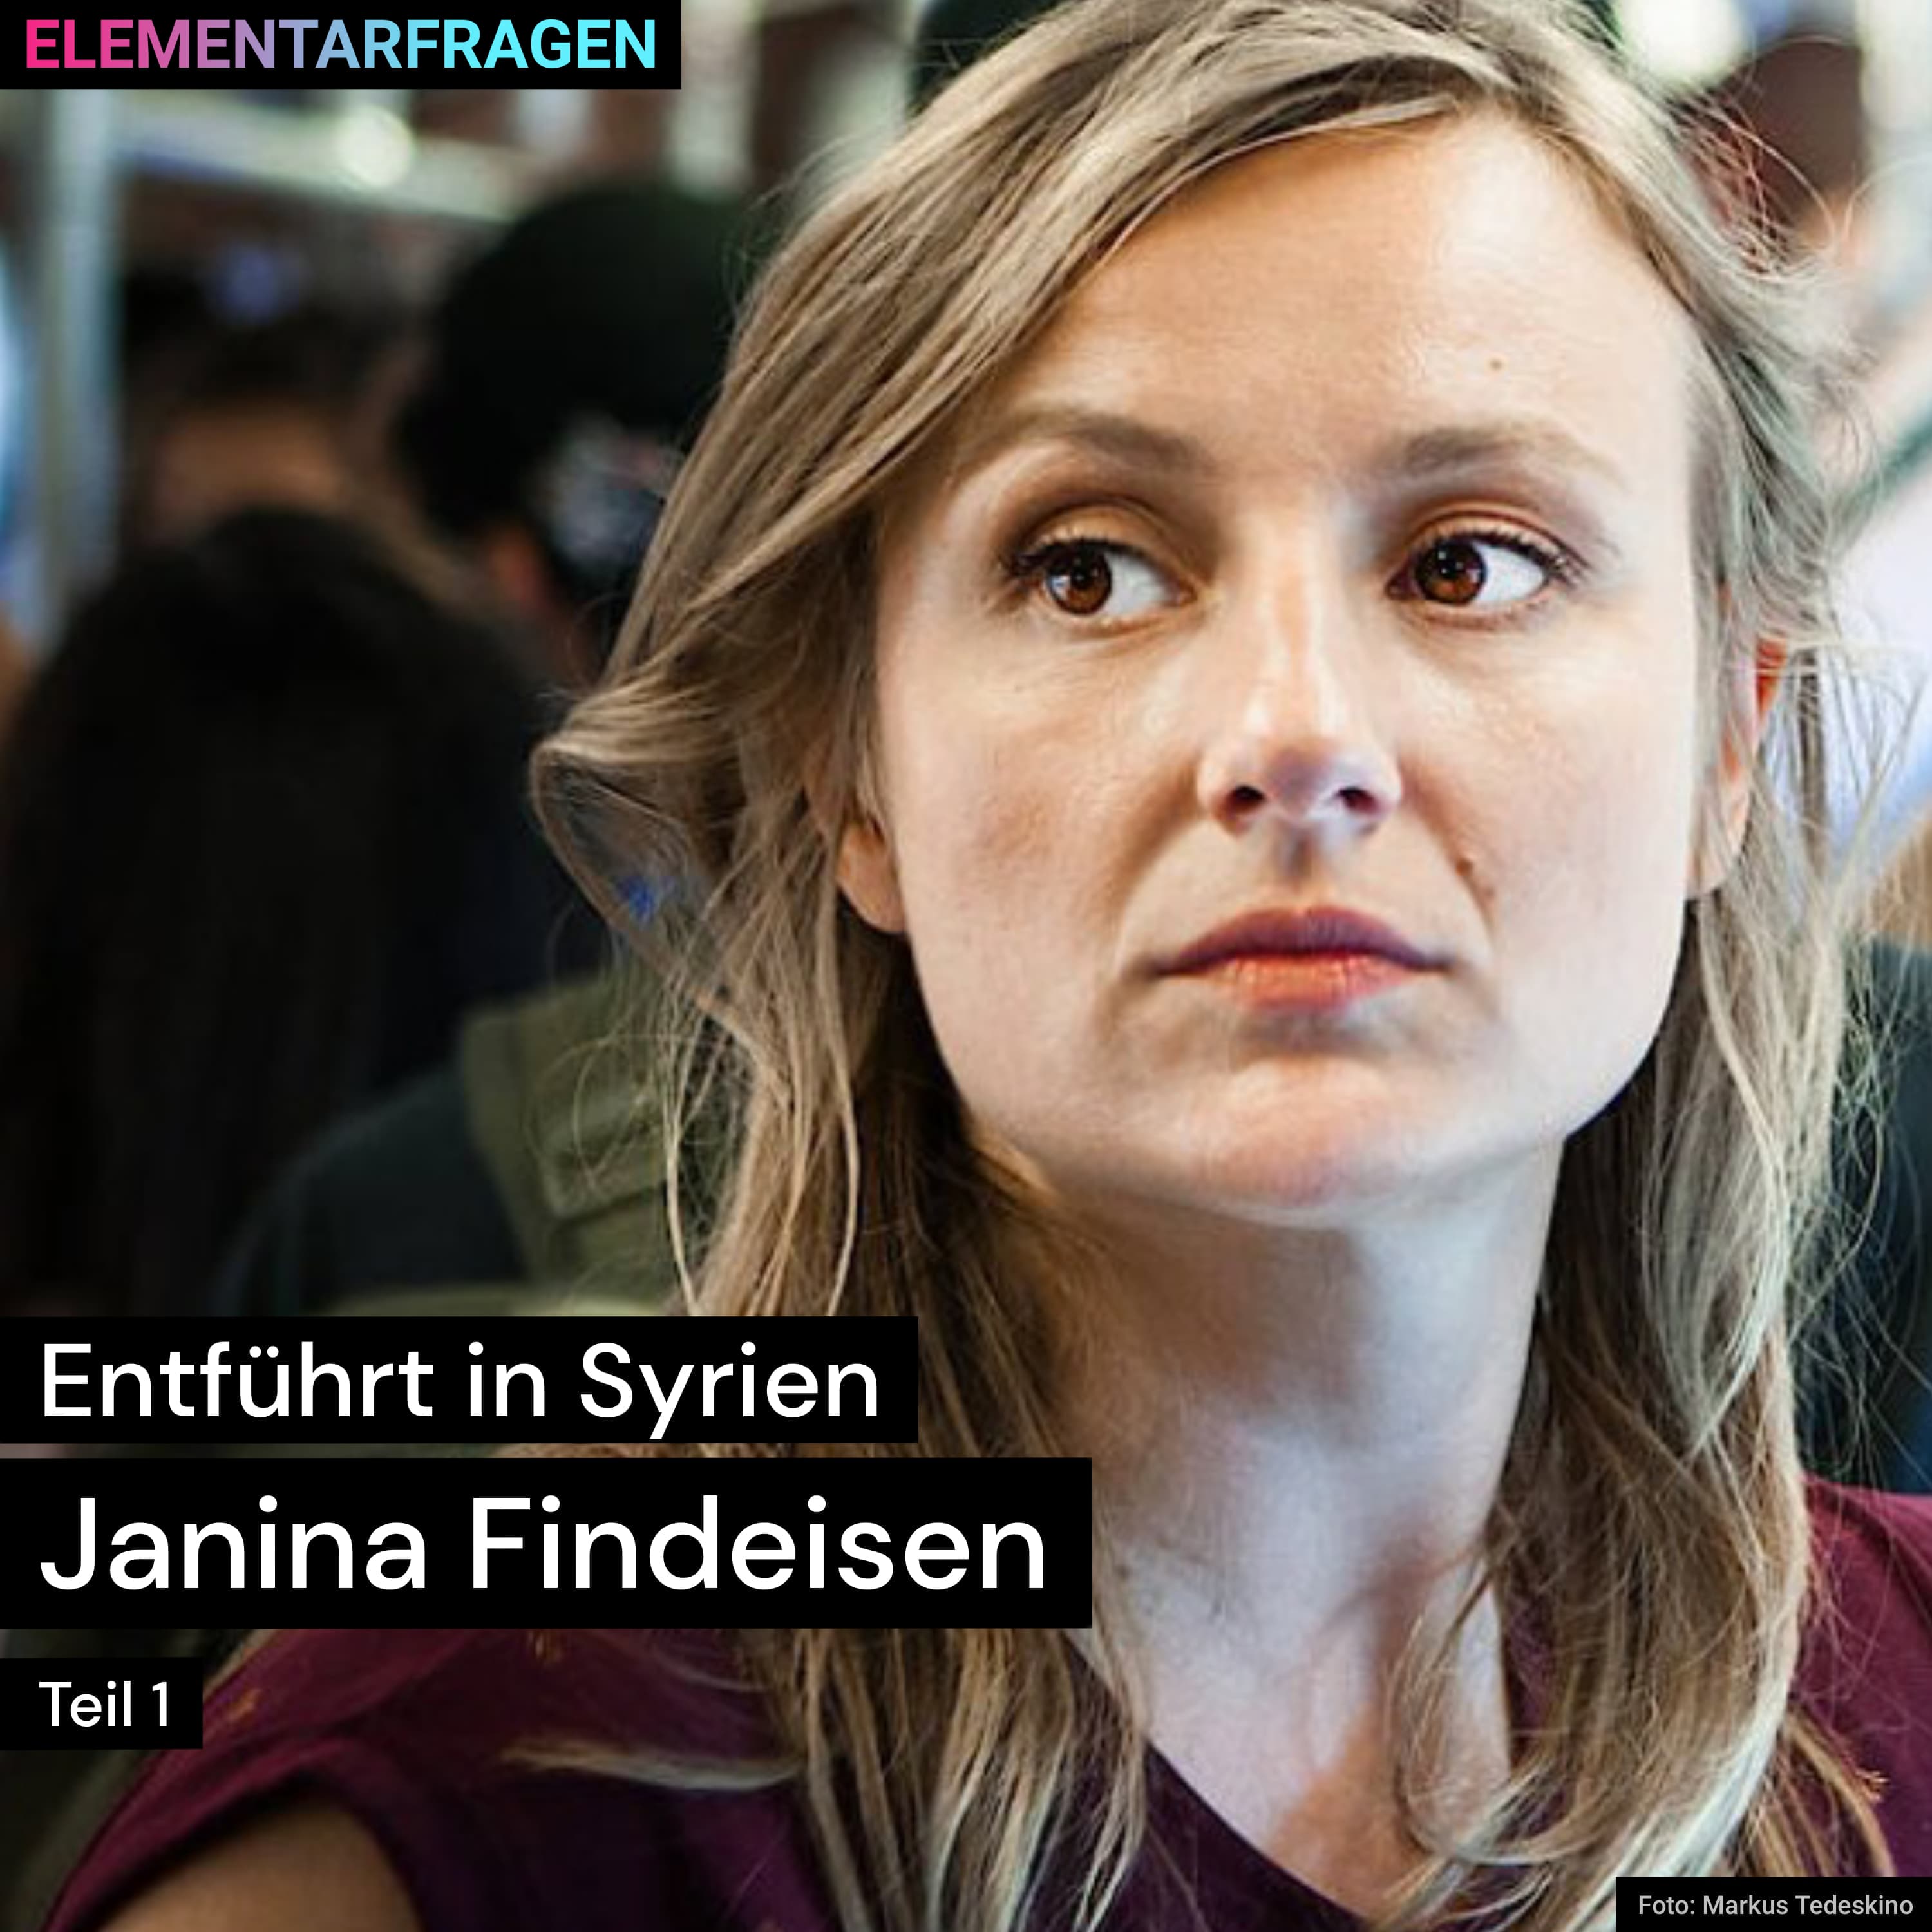 Entführt in Syrien (Teil 1) | Janina Findeisen